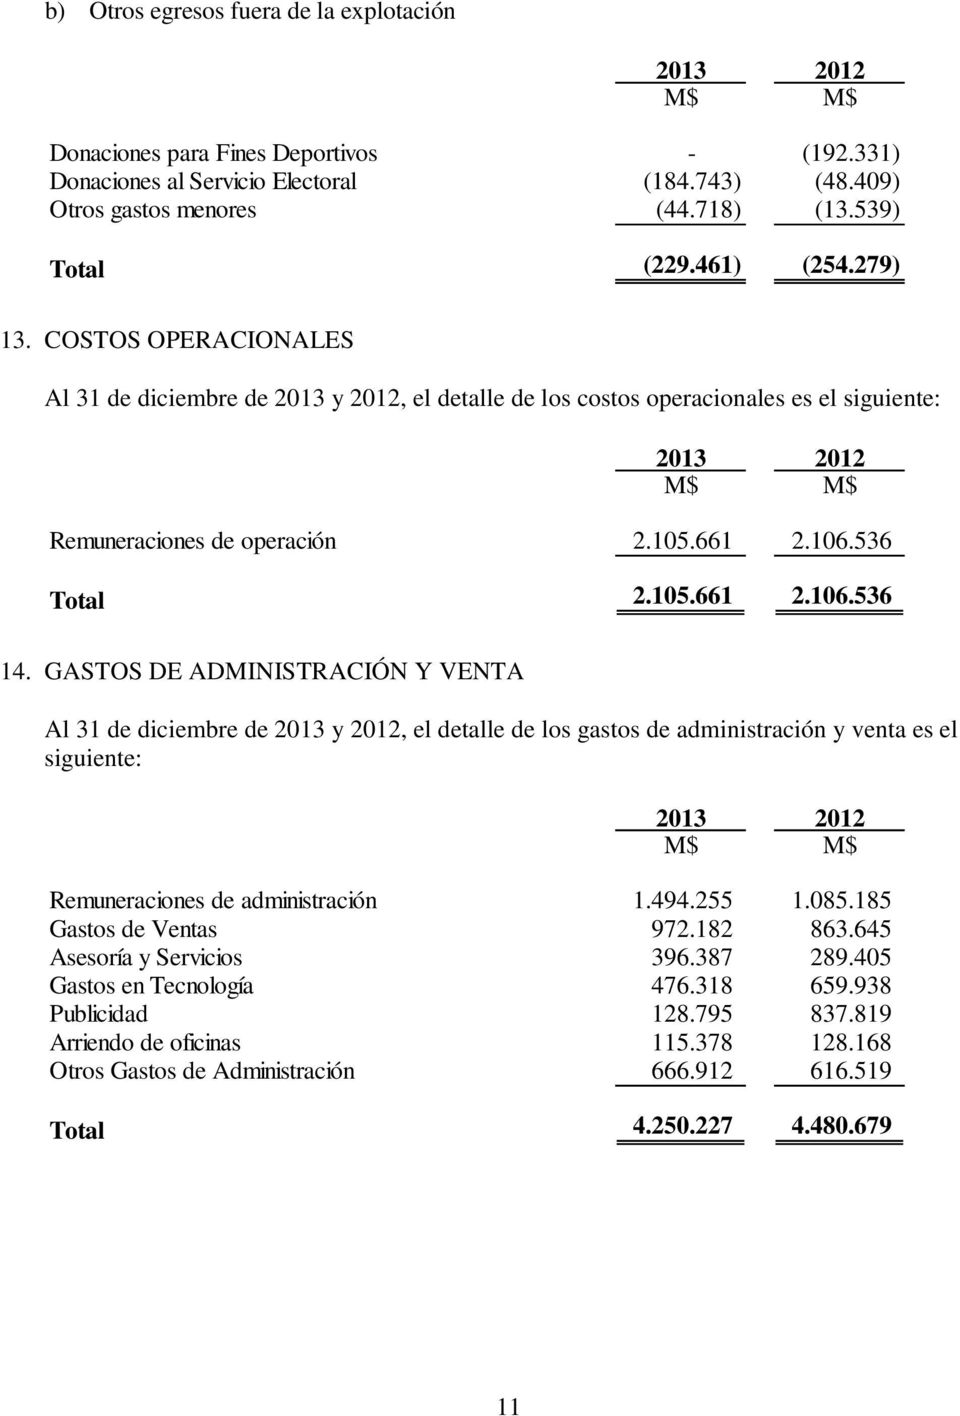 GASTOS DE ADMINISTRACIÓN Y VENTA Al 31 de diciembre de 2013 y 2012, el detalle de los gastos de administración y venta es el siguiente: Remuneraciones de administración 1.494.255 1.085.